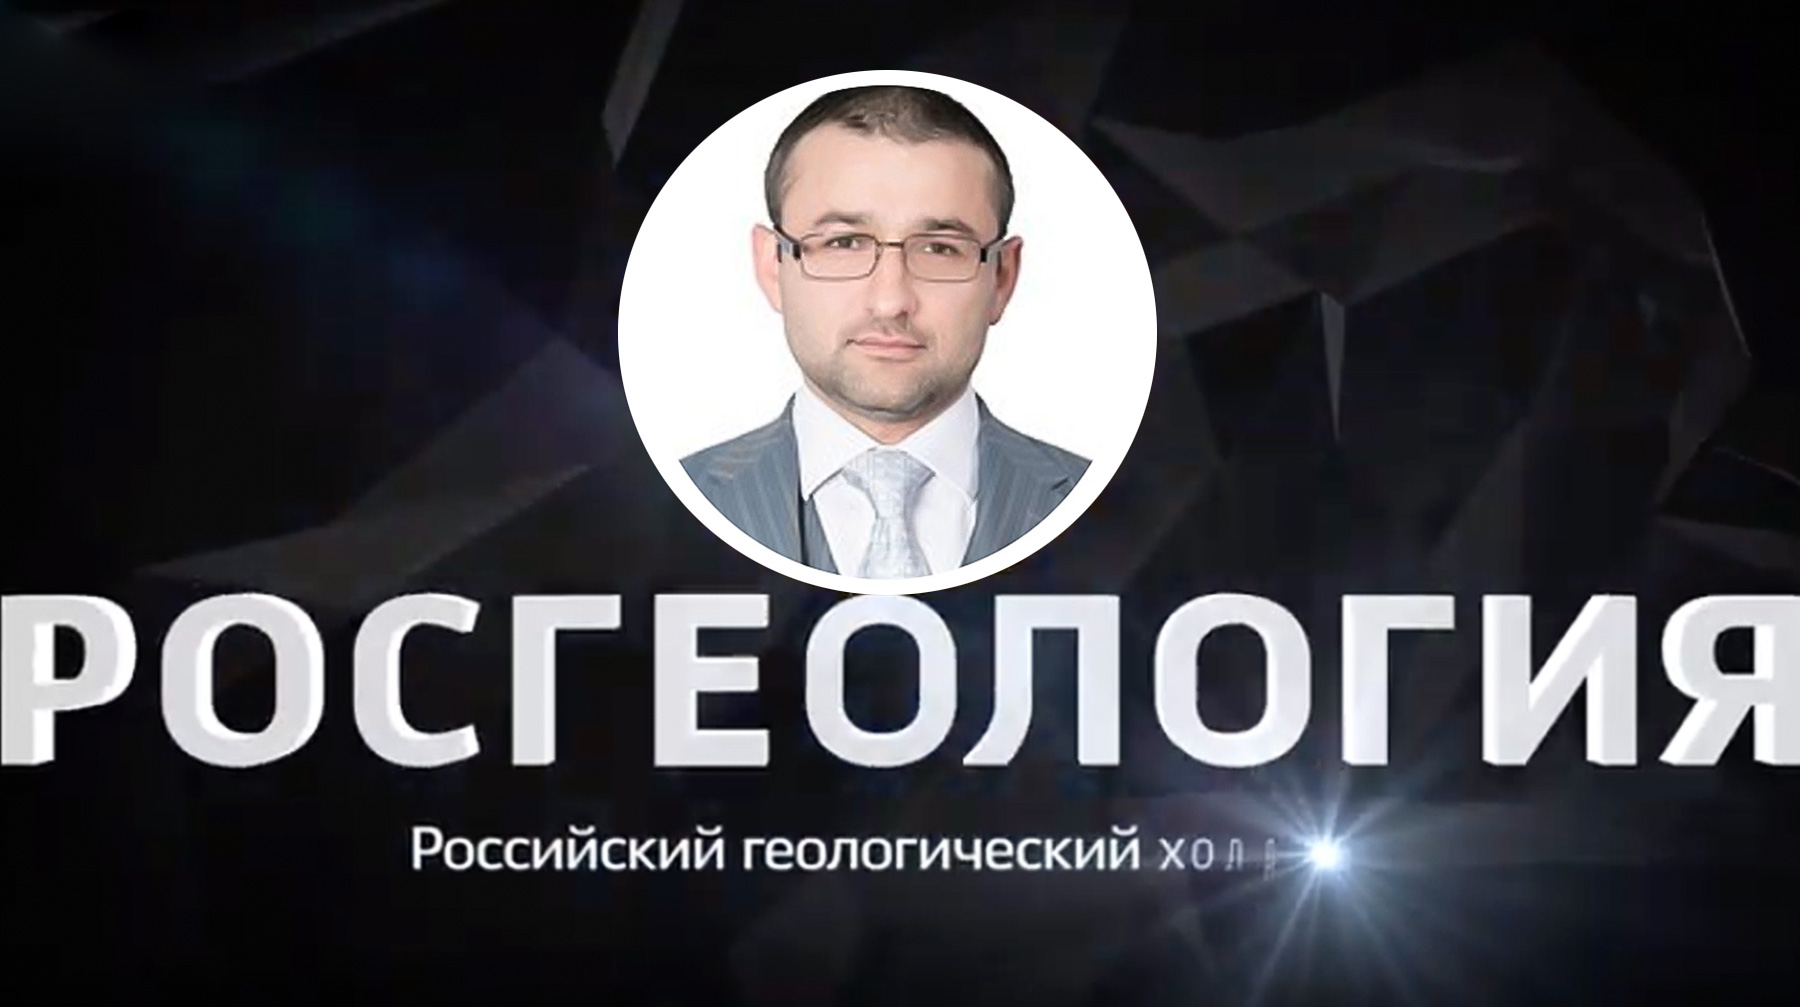 Глава Минприроды Дмитрий Кобылкин не имеет отношения к увольнению менеджера, заявили в компании Руслан Горринг